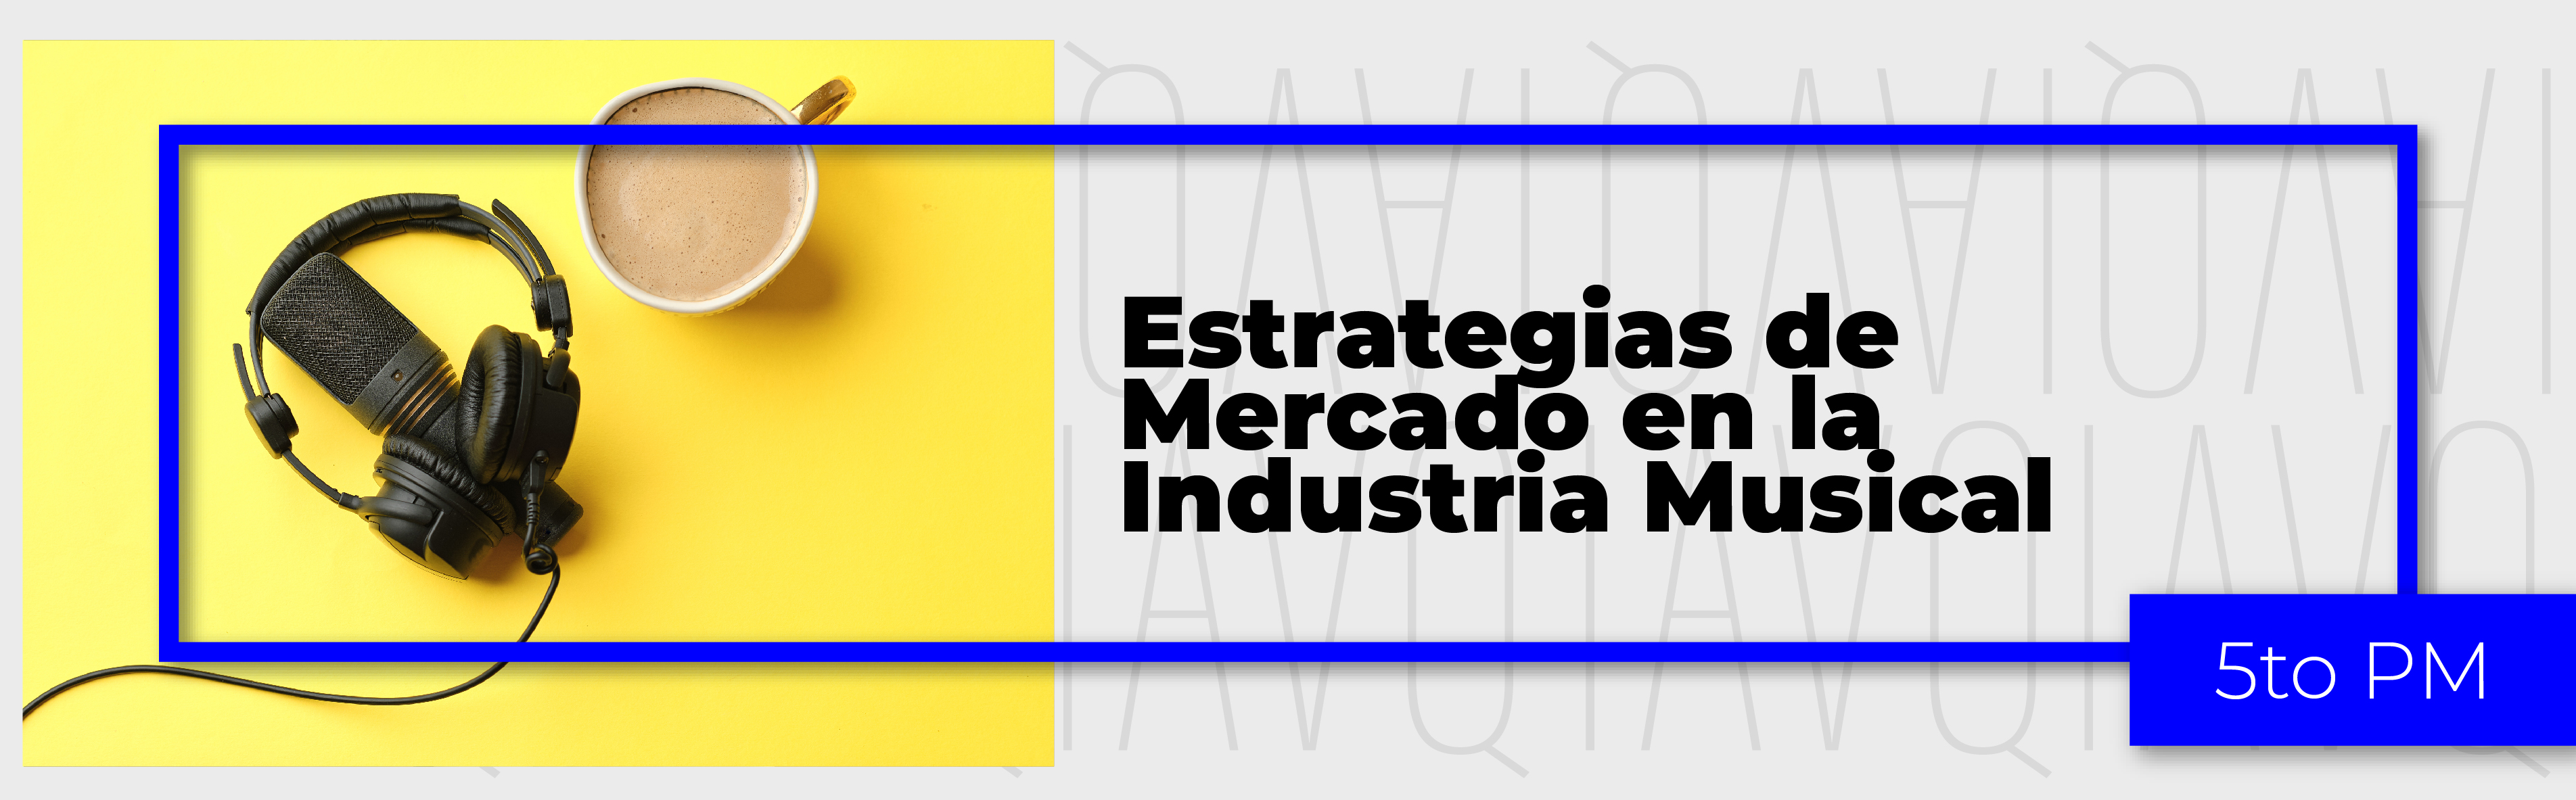 PA_24-24_PM_S_4_Estrategias_de_Mercado_en_la_Industria_Musical